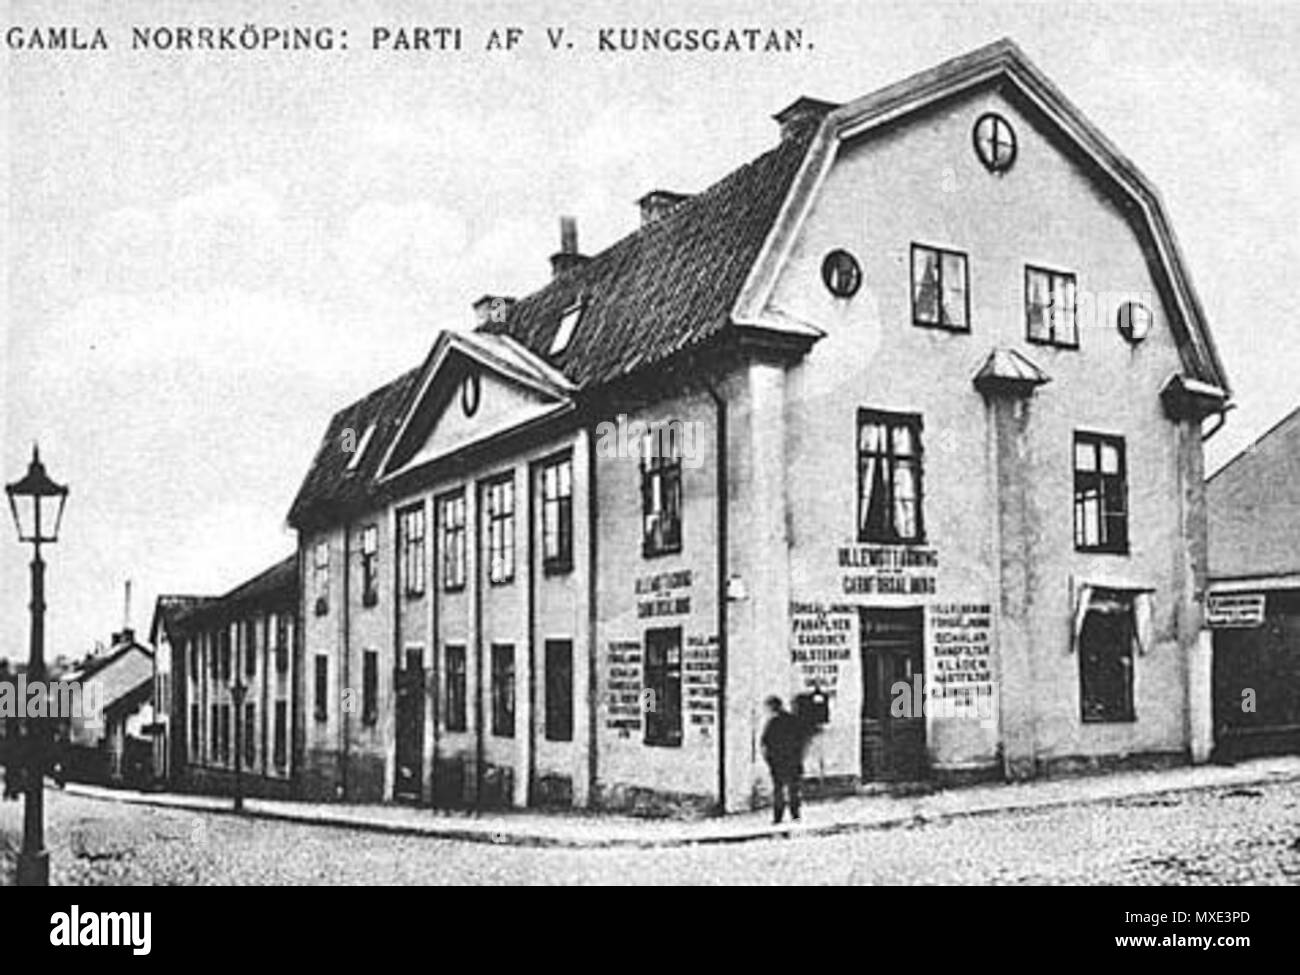 449 Norrköping, Västra Kungsgatan i början av 1900-talet Stock Photo